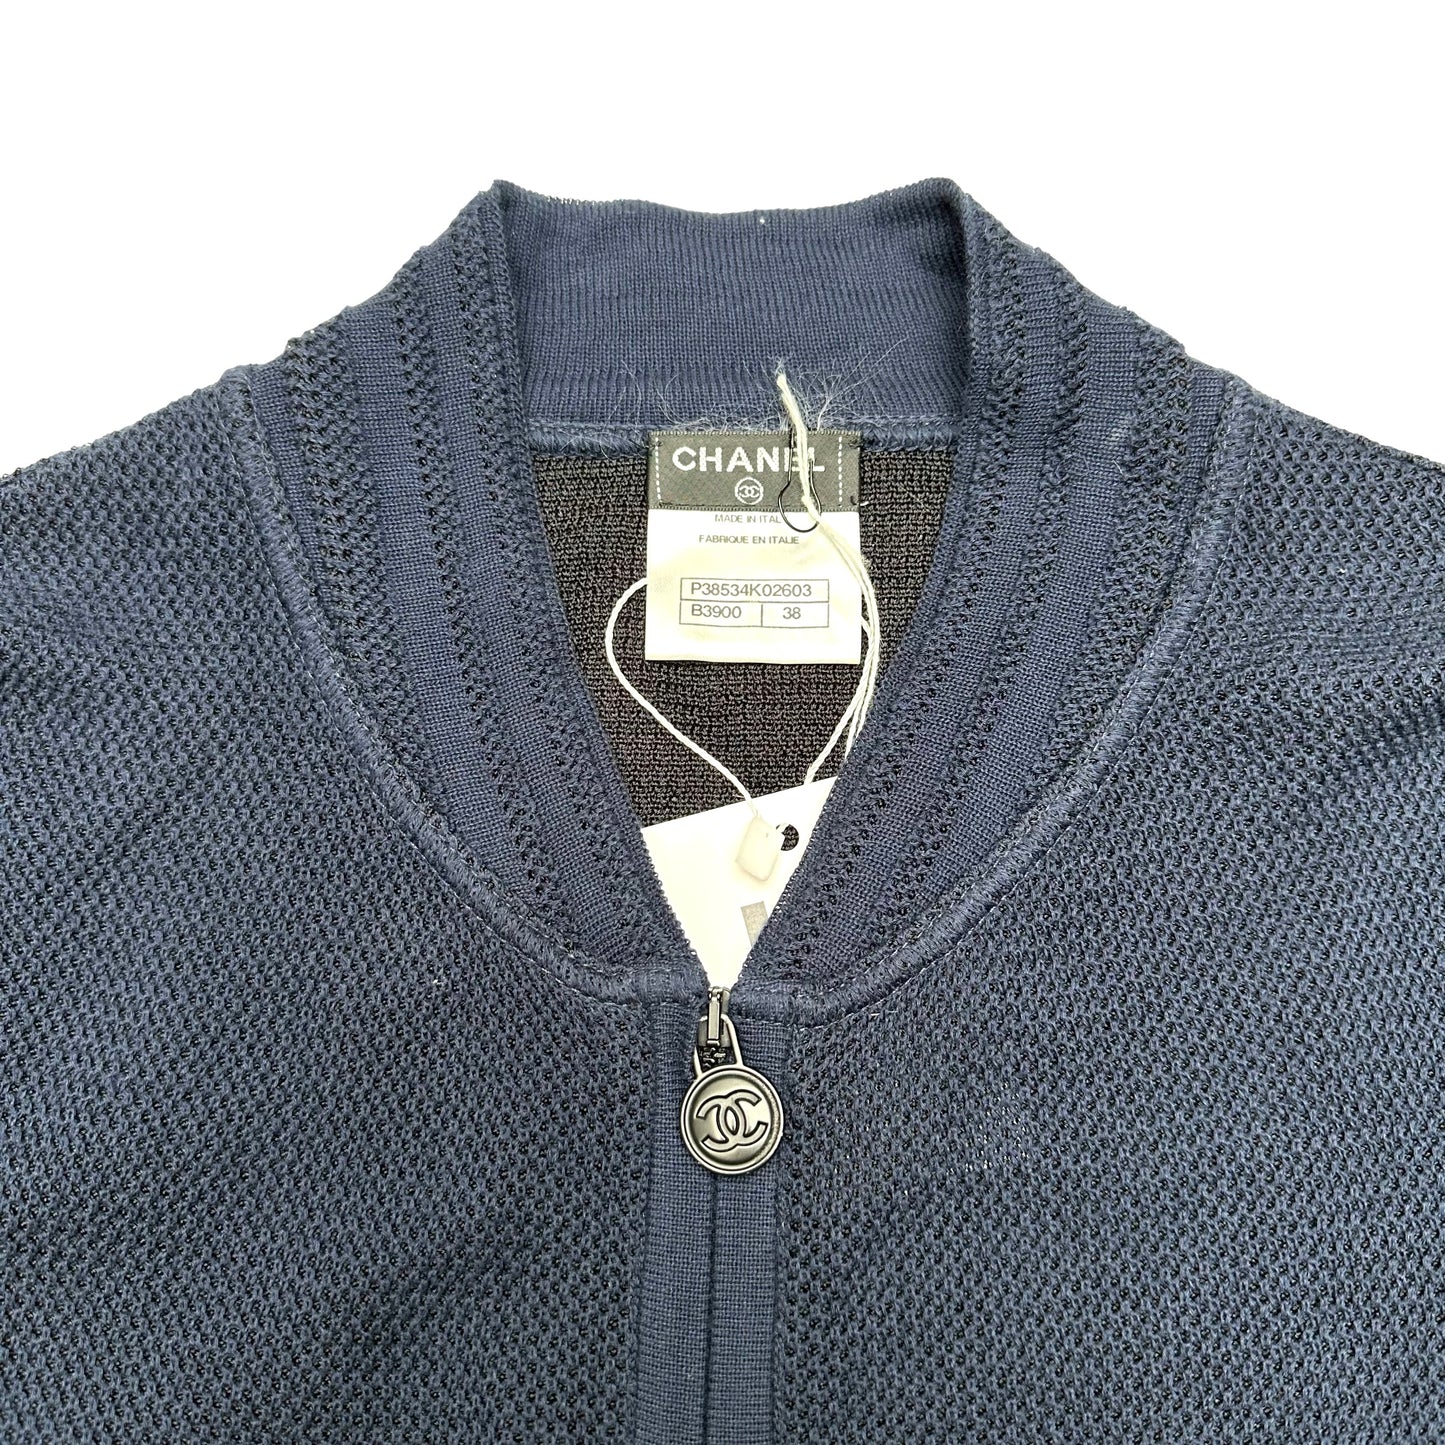 Navy Zipper Sweater - S/M